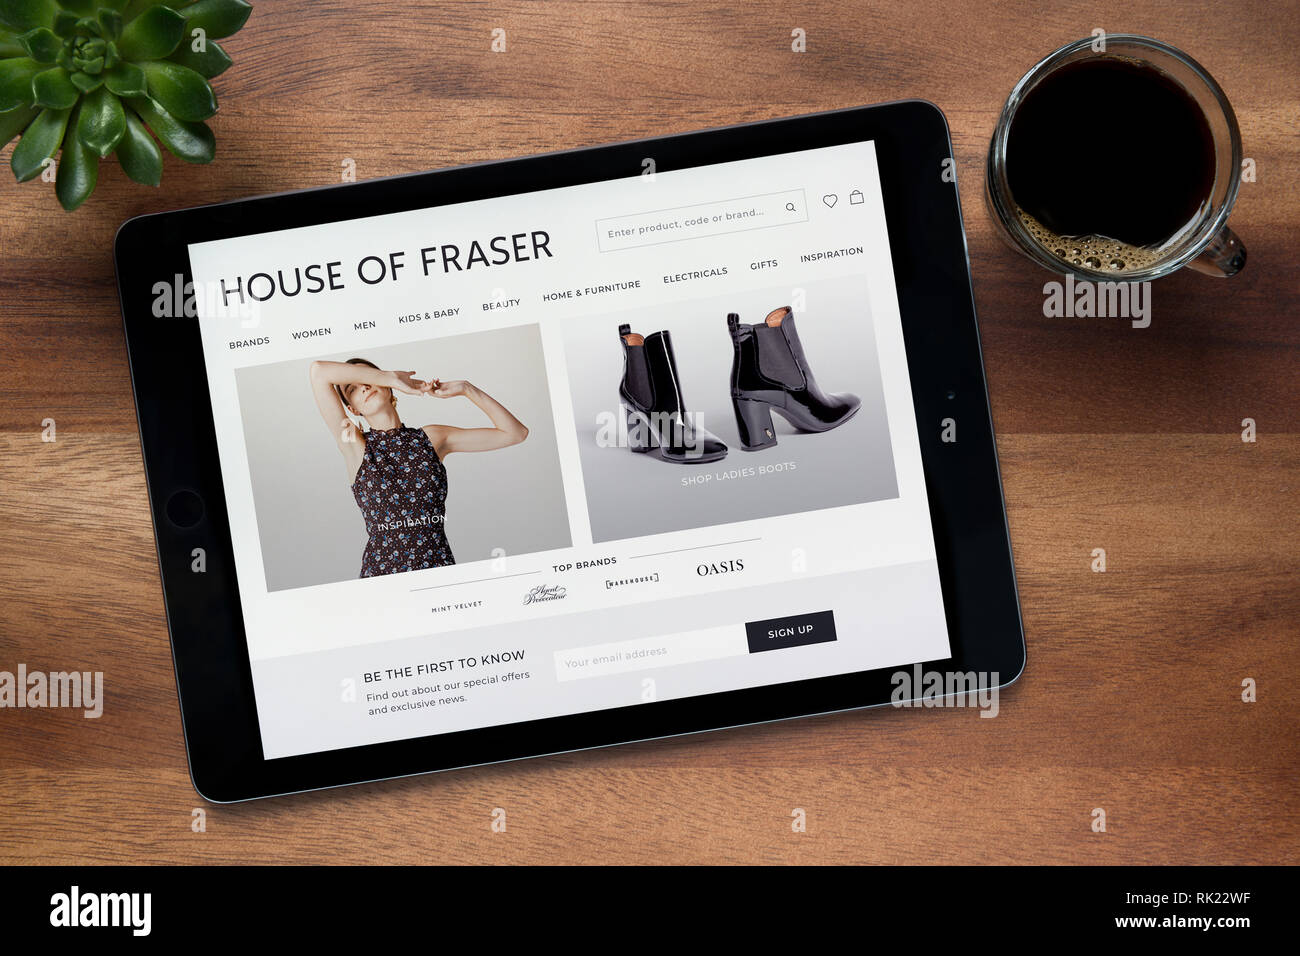 Le site internet de House of Fraser est vu sur un iPad tablet, sur une table en bois avec une machine à expresso et d'une plante (usage éditorial uniquement). Banque D'Images